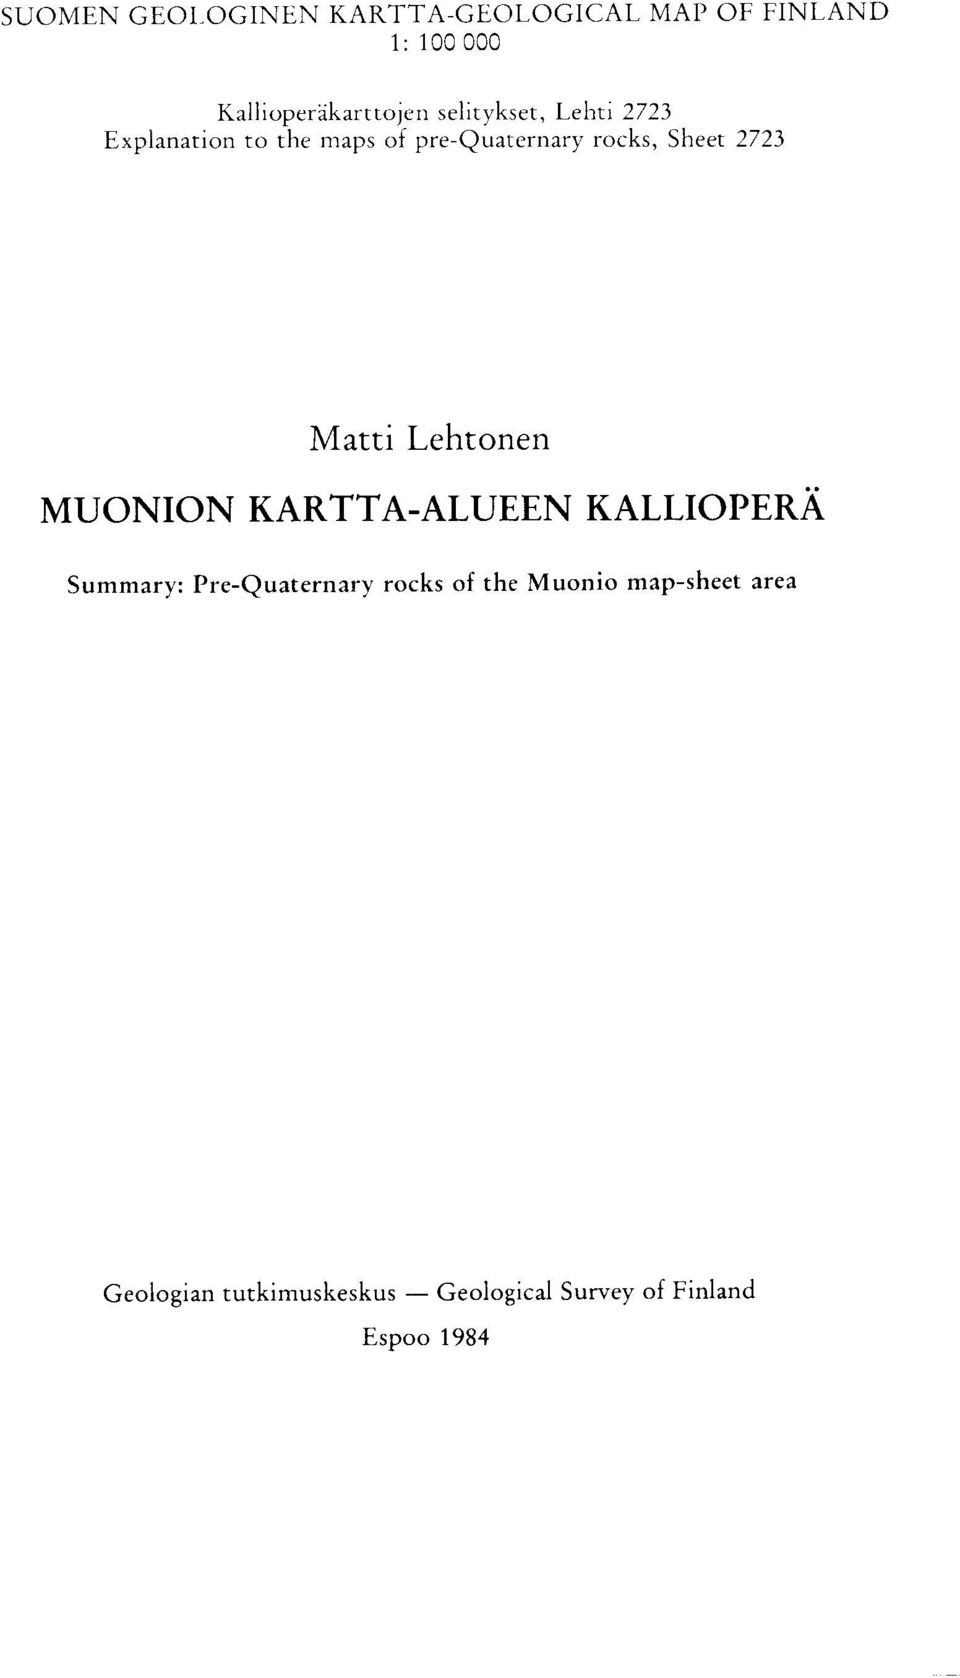 Matti Lehtonen MUONION KARTTA-ALUEEN KALLIOPERA Summary : Pre-Quaternary rocks of